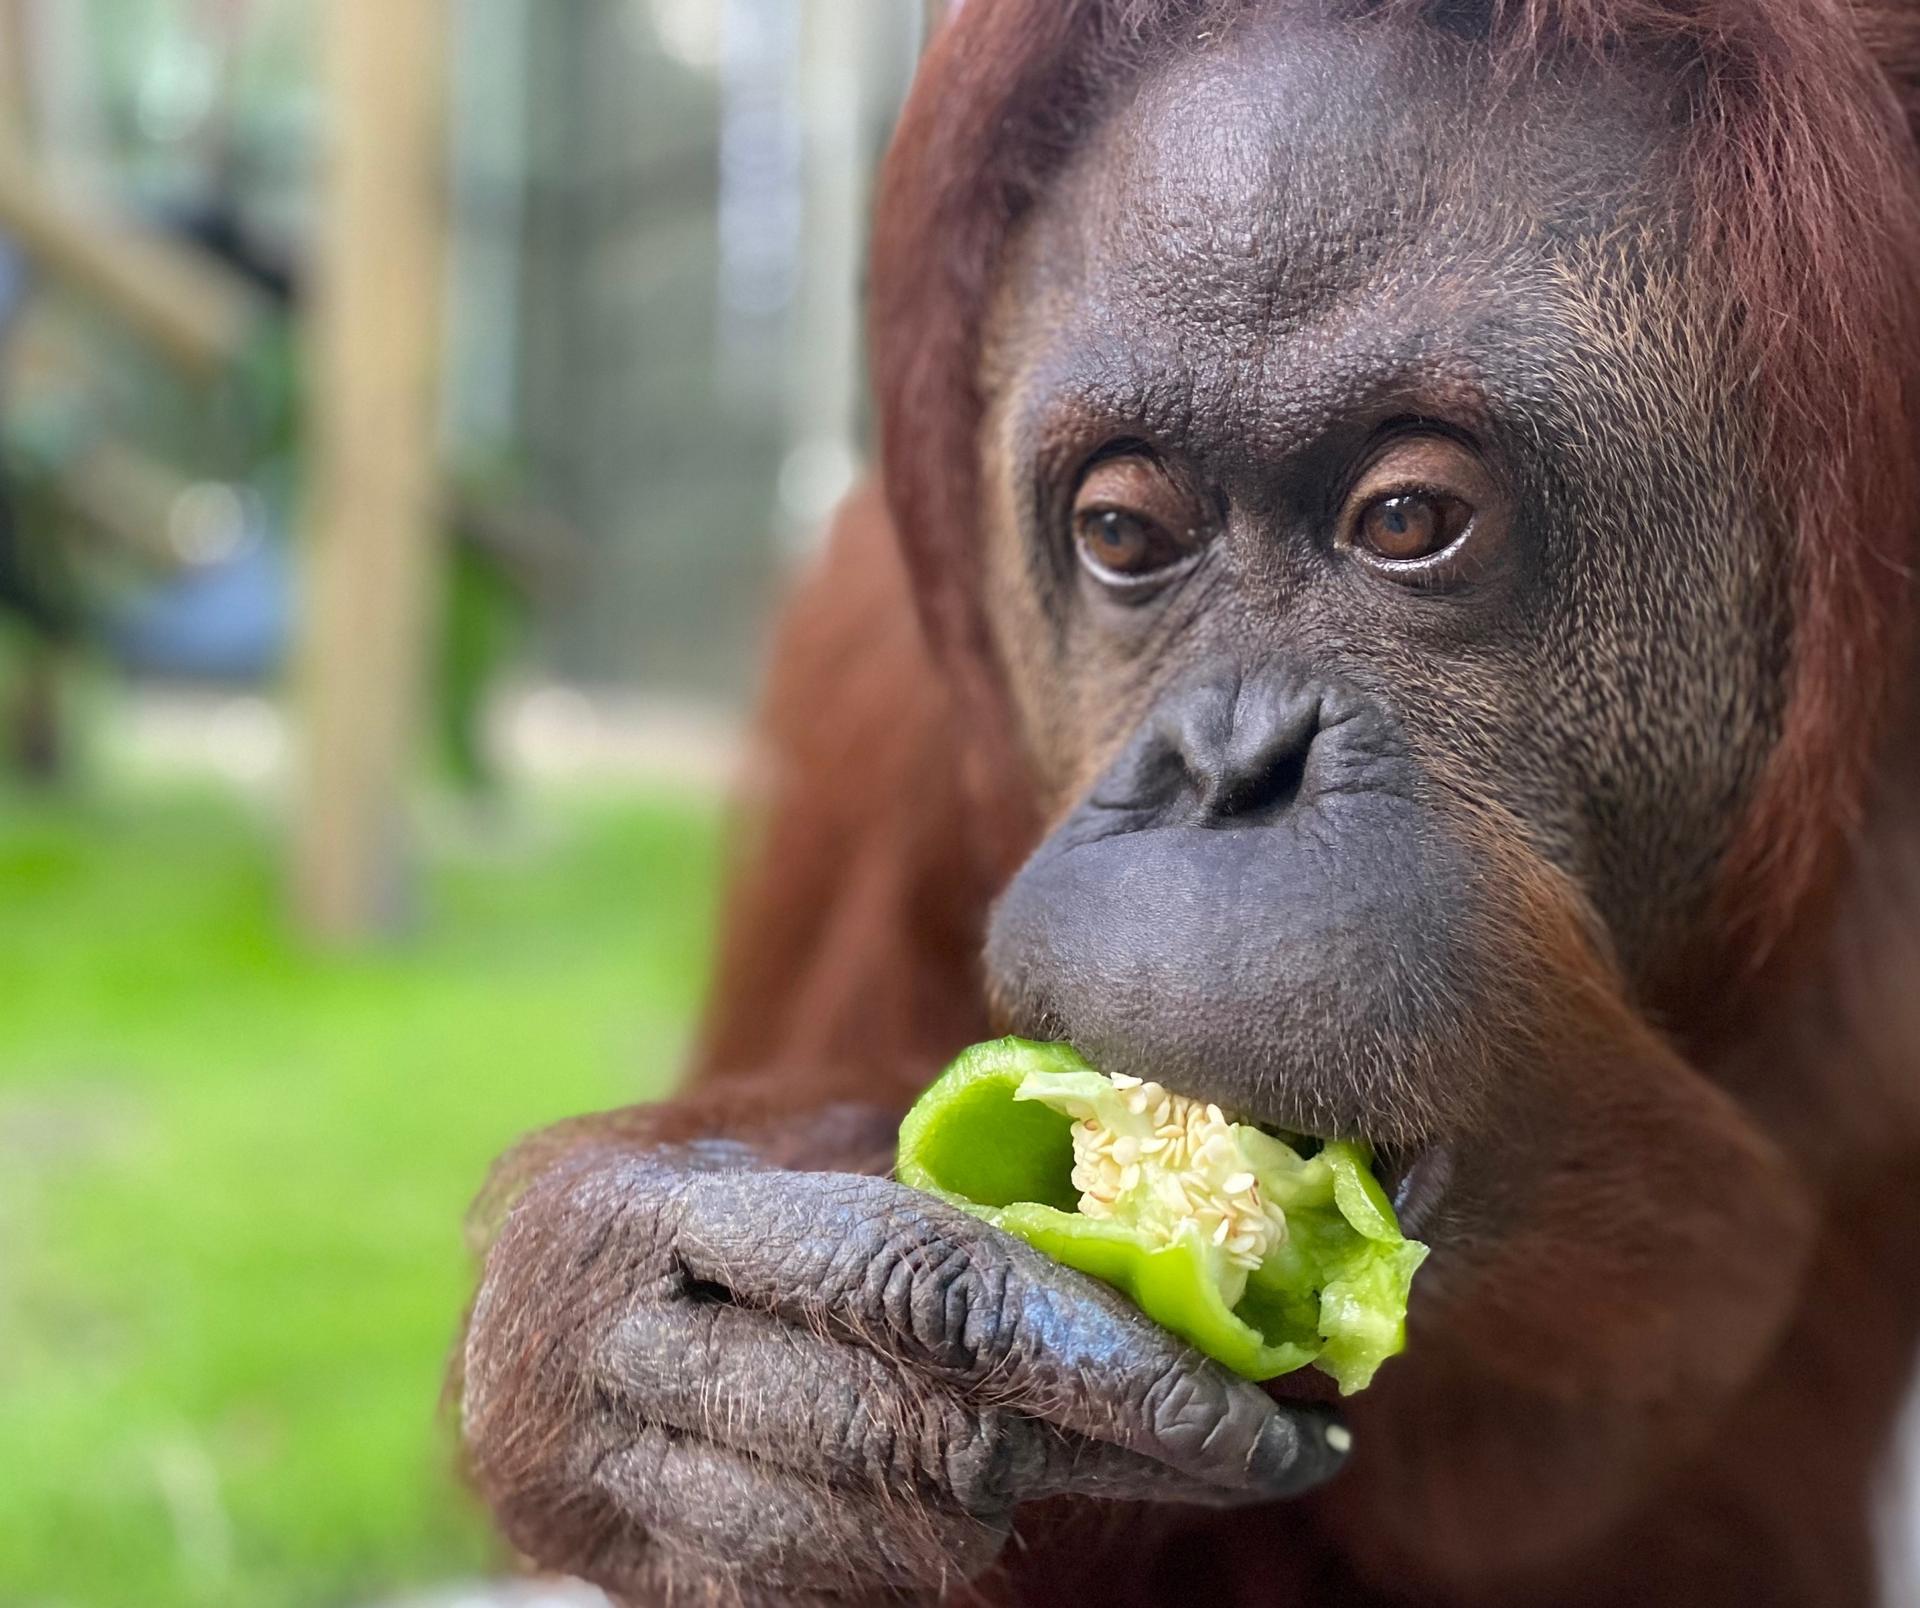 An orangutan eats a green pepper 